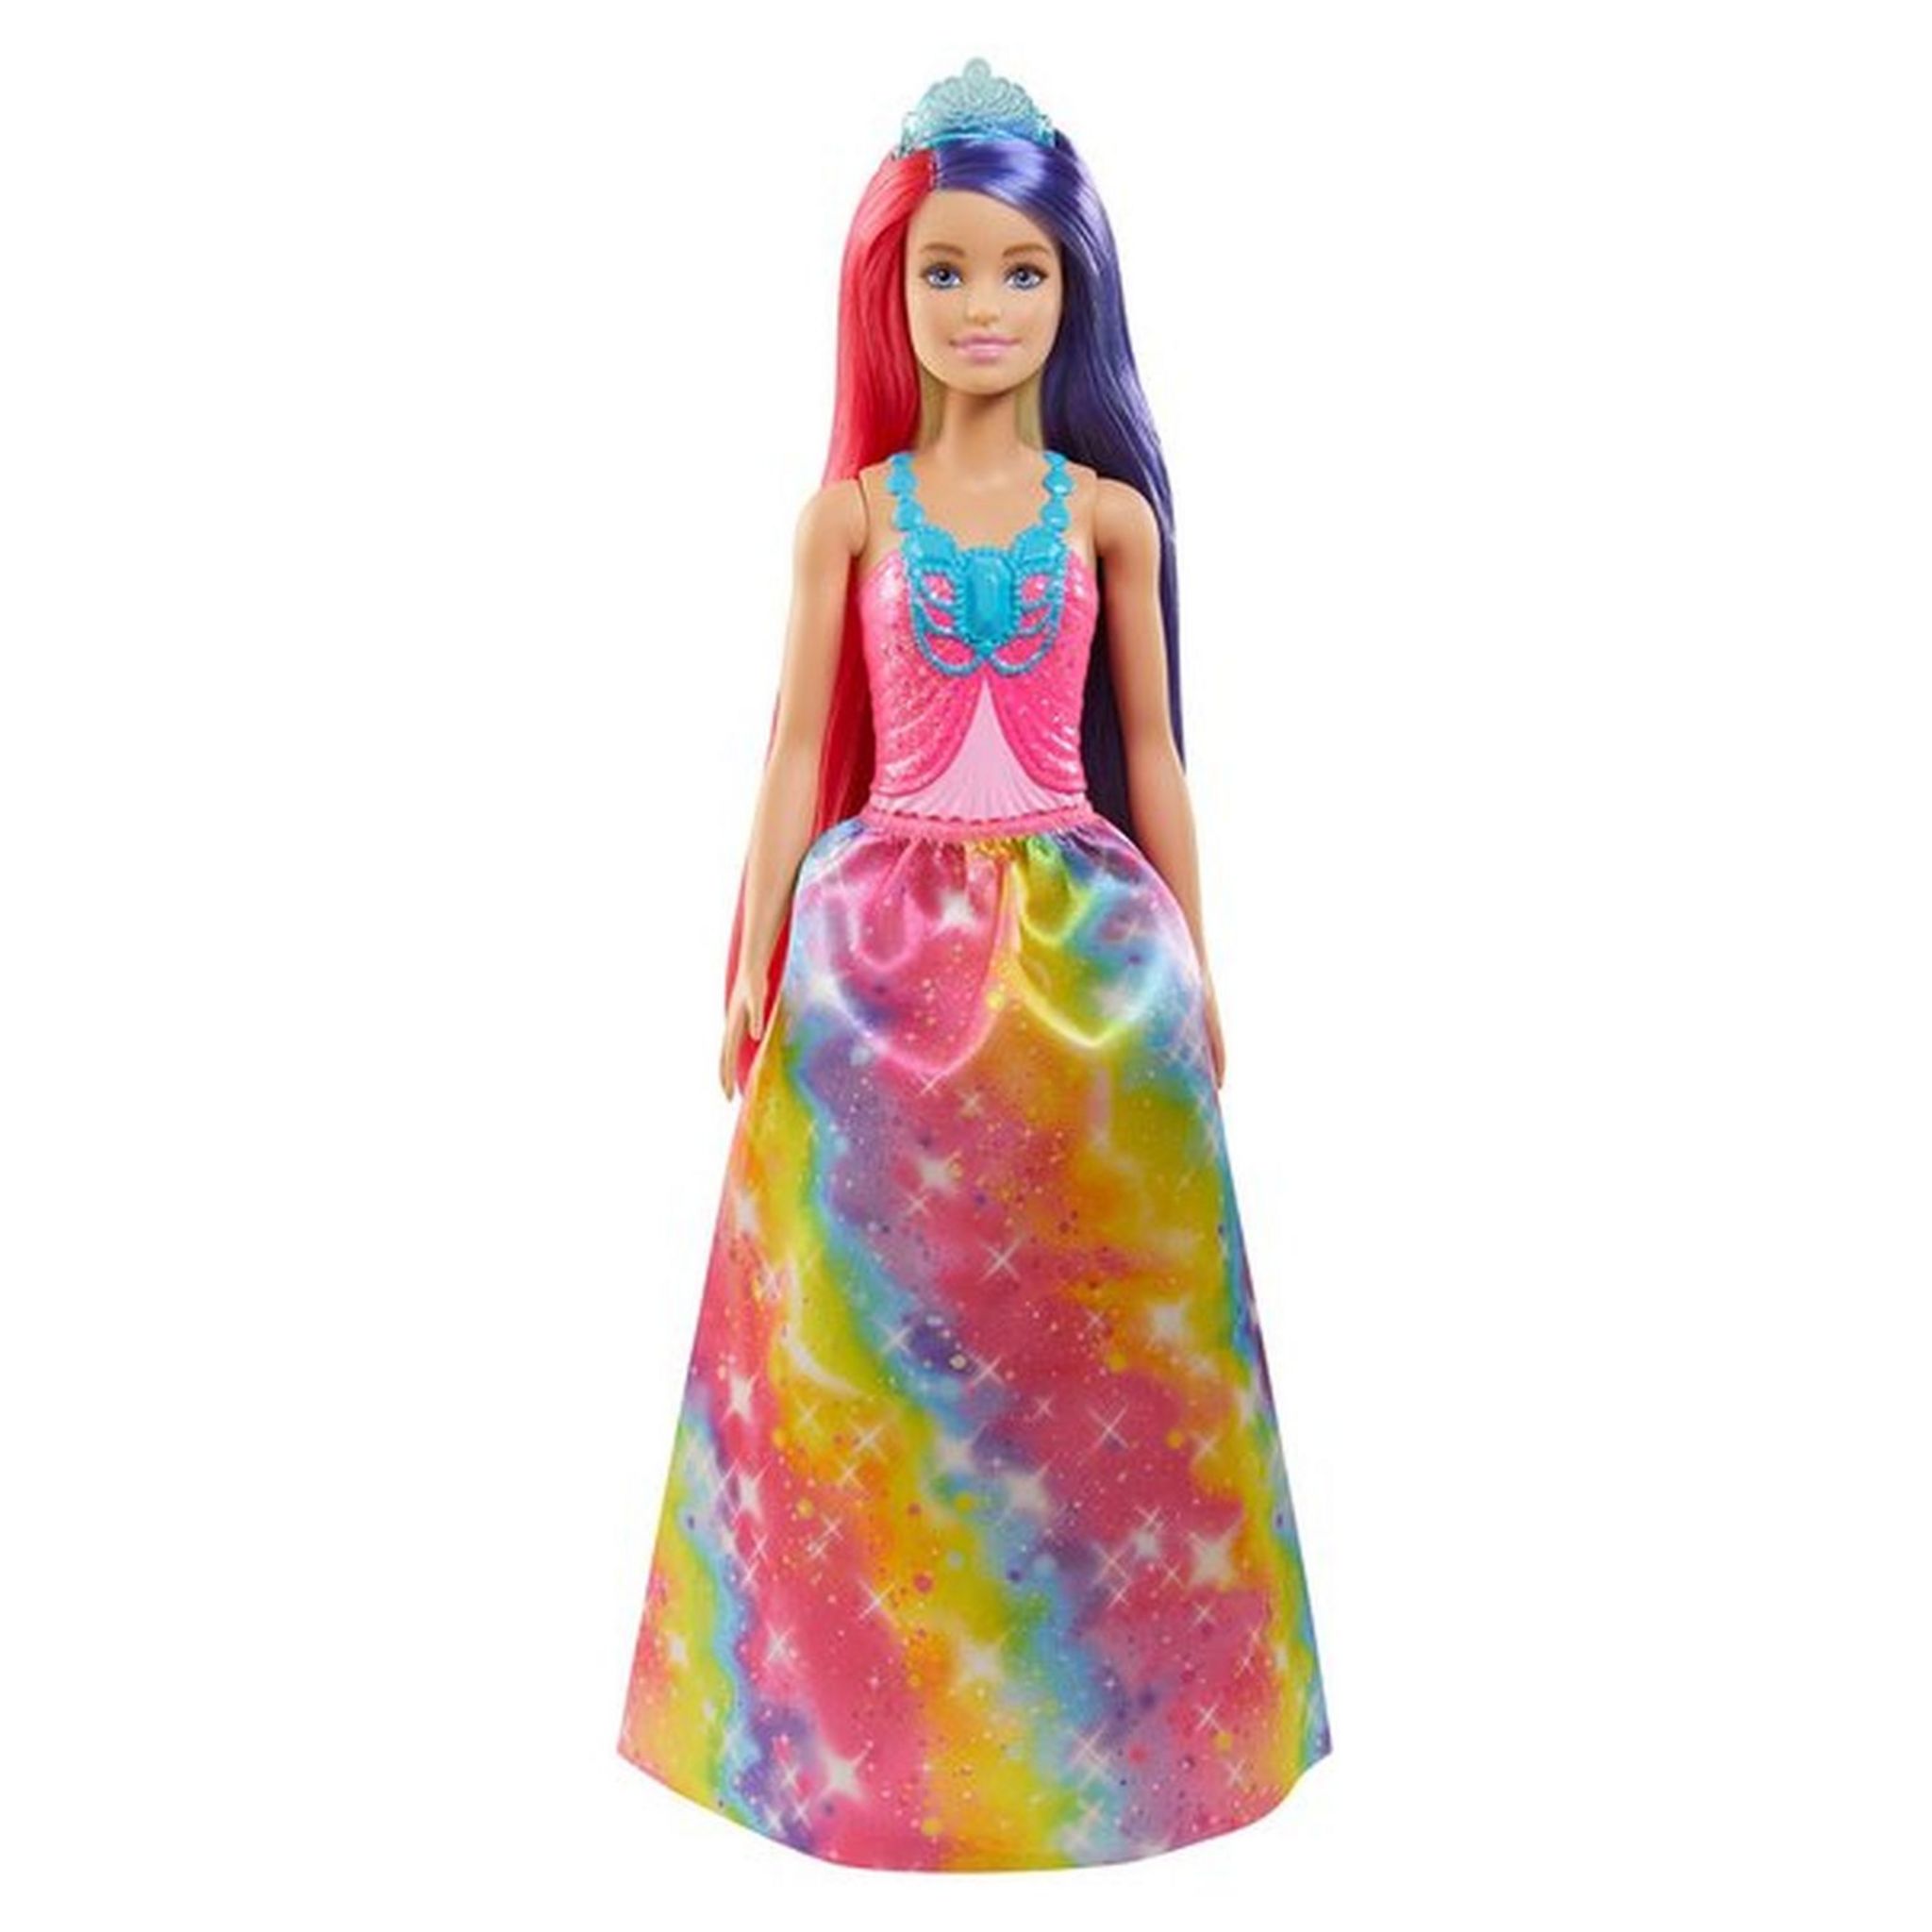 Barbie - poupée malibu chanteuse (+ accessoires) - 30 cm multicolore Mattel